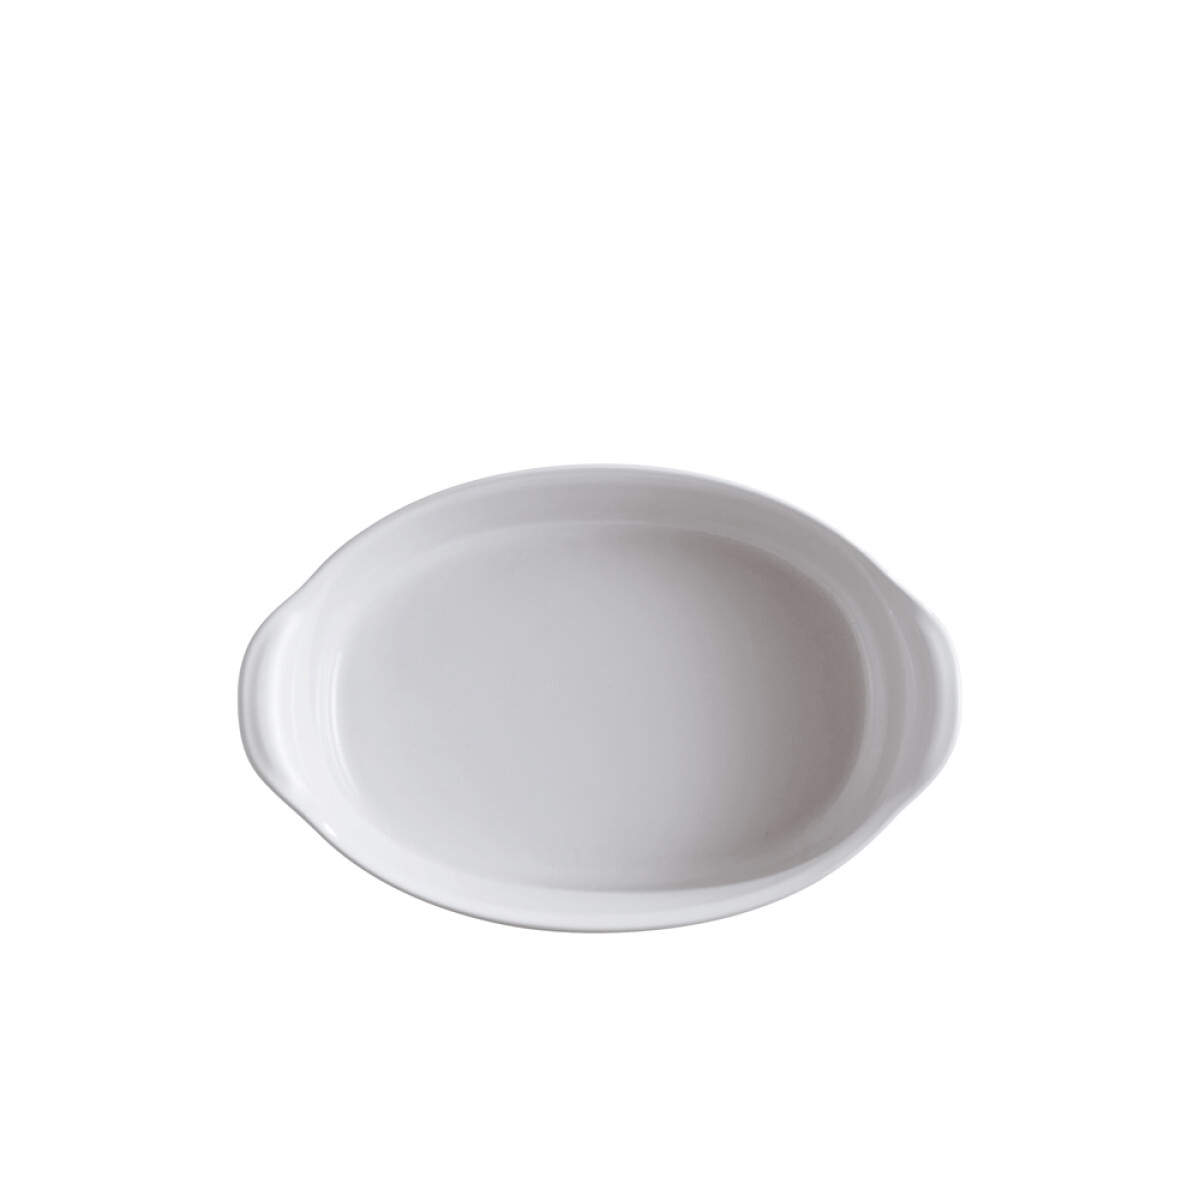 Керамична тава EMILE HENRY SMALL OVAL OVEN DISH - цвят бял